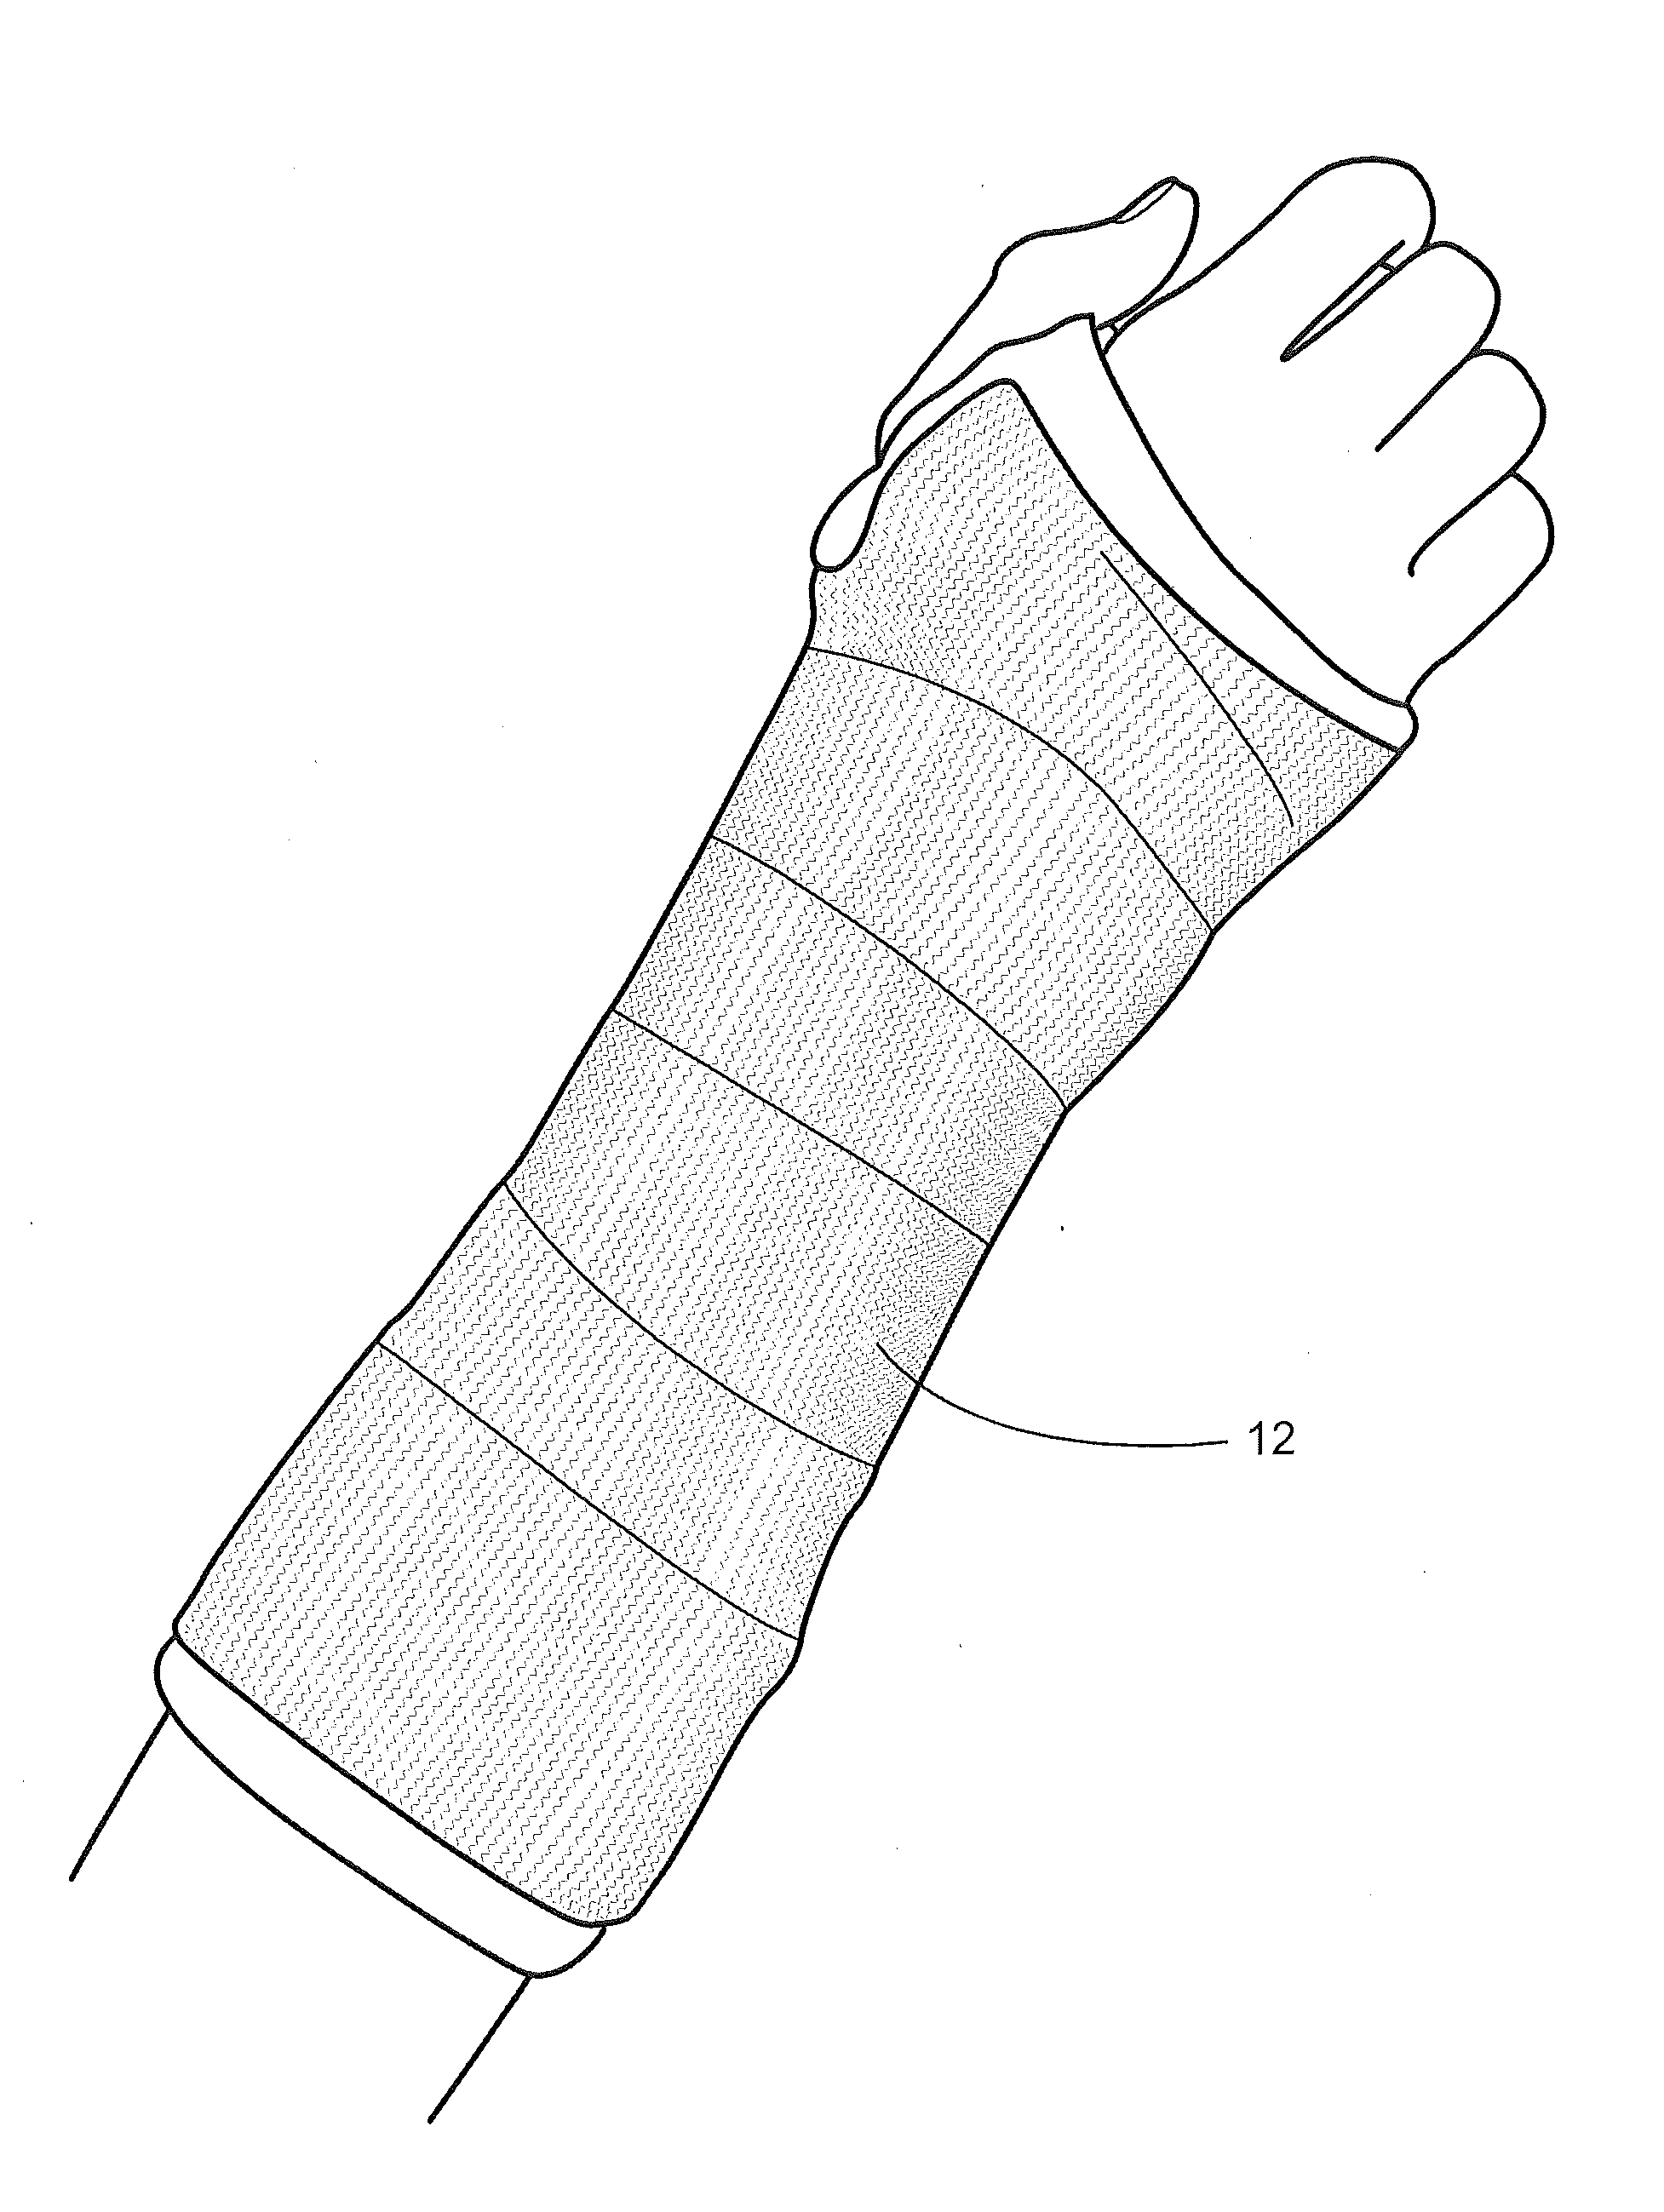 Orthopedic cast and splint bandages with encapsulated hardening medium and method